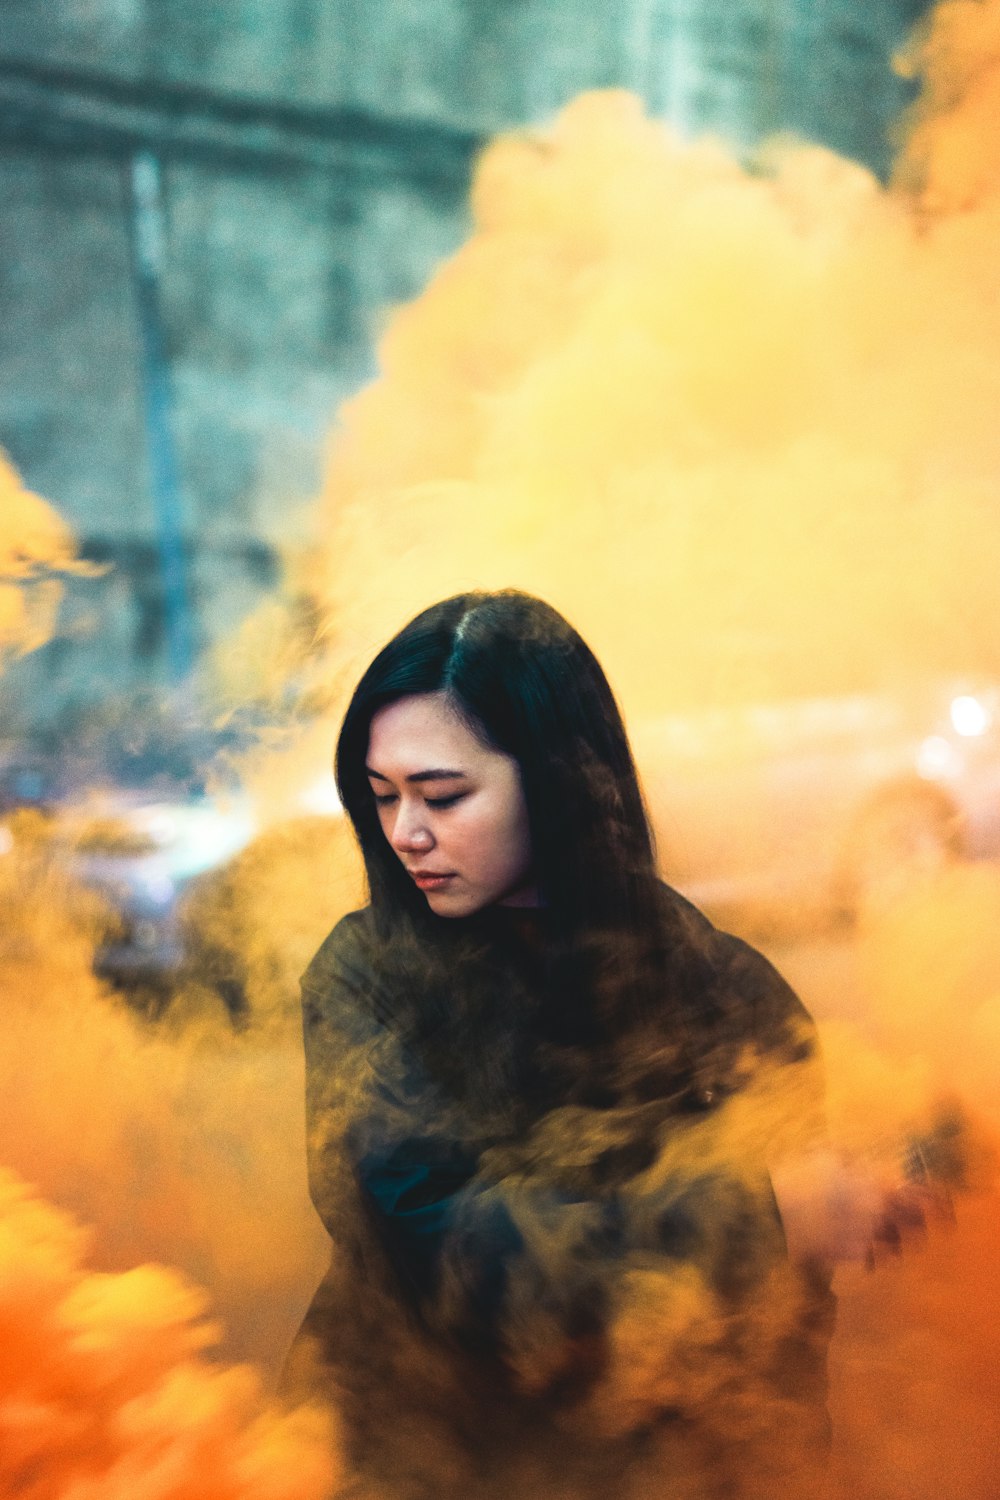 femme entourée d’une fumée orange